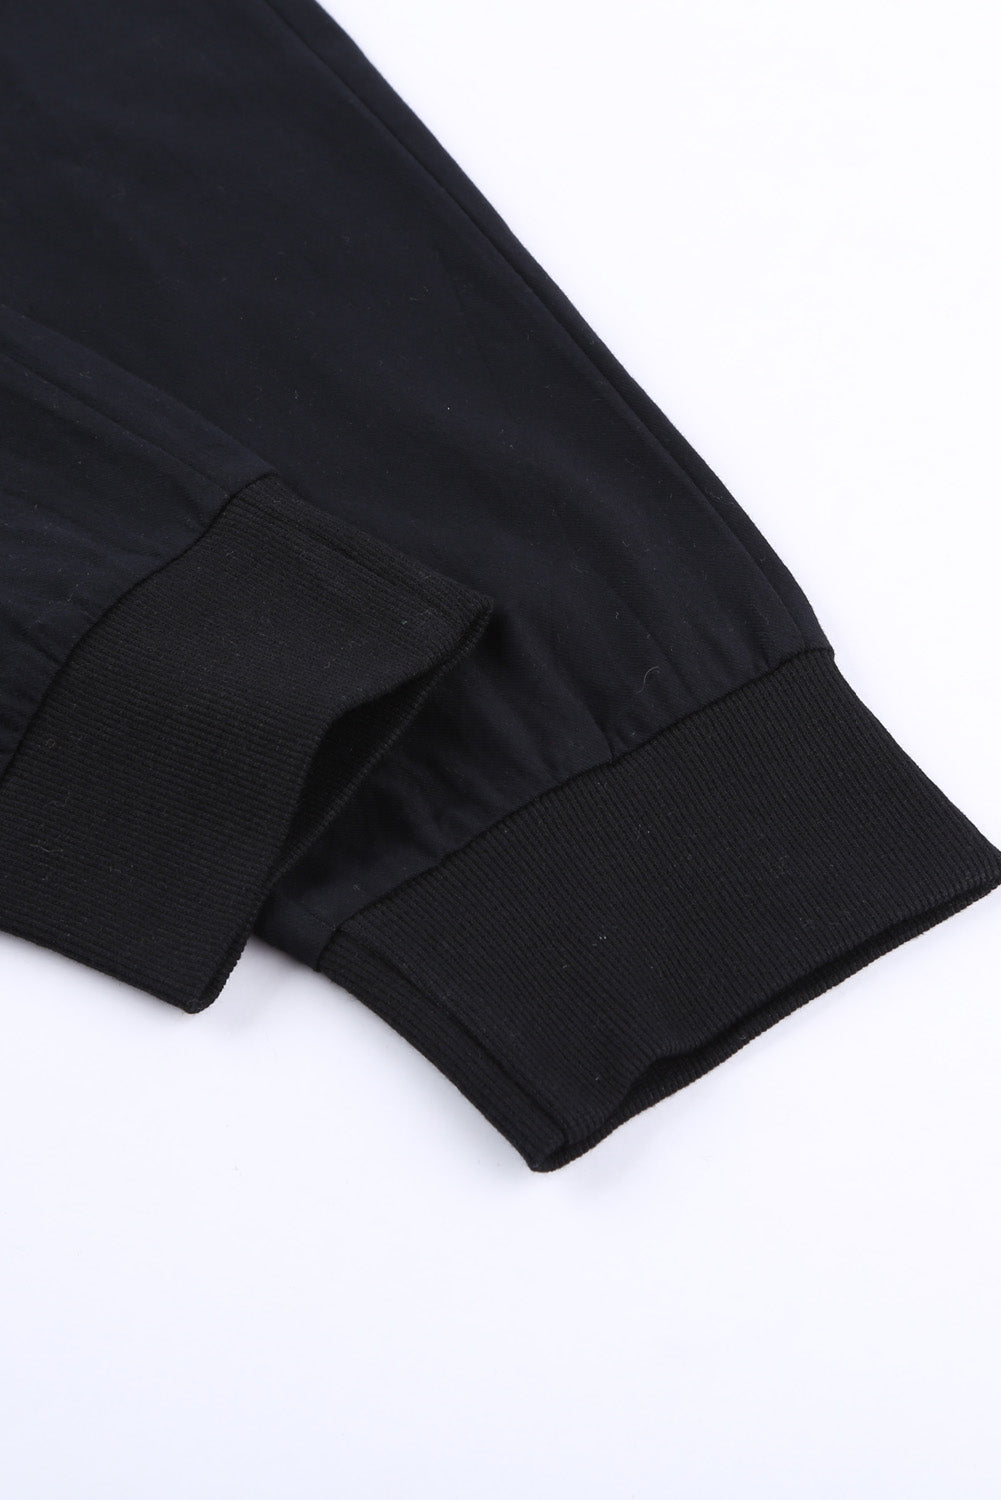 Crne kauzalne hlače s džepovima